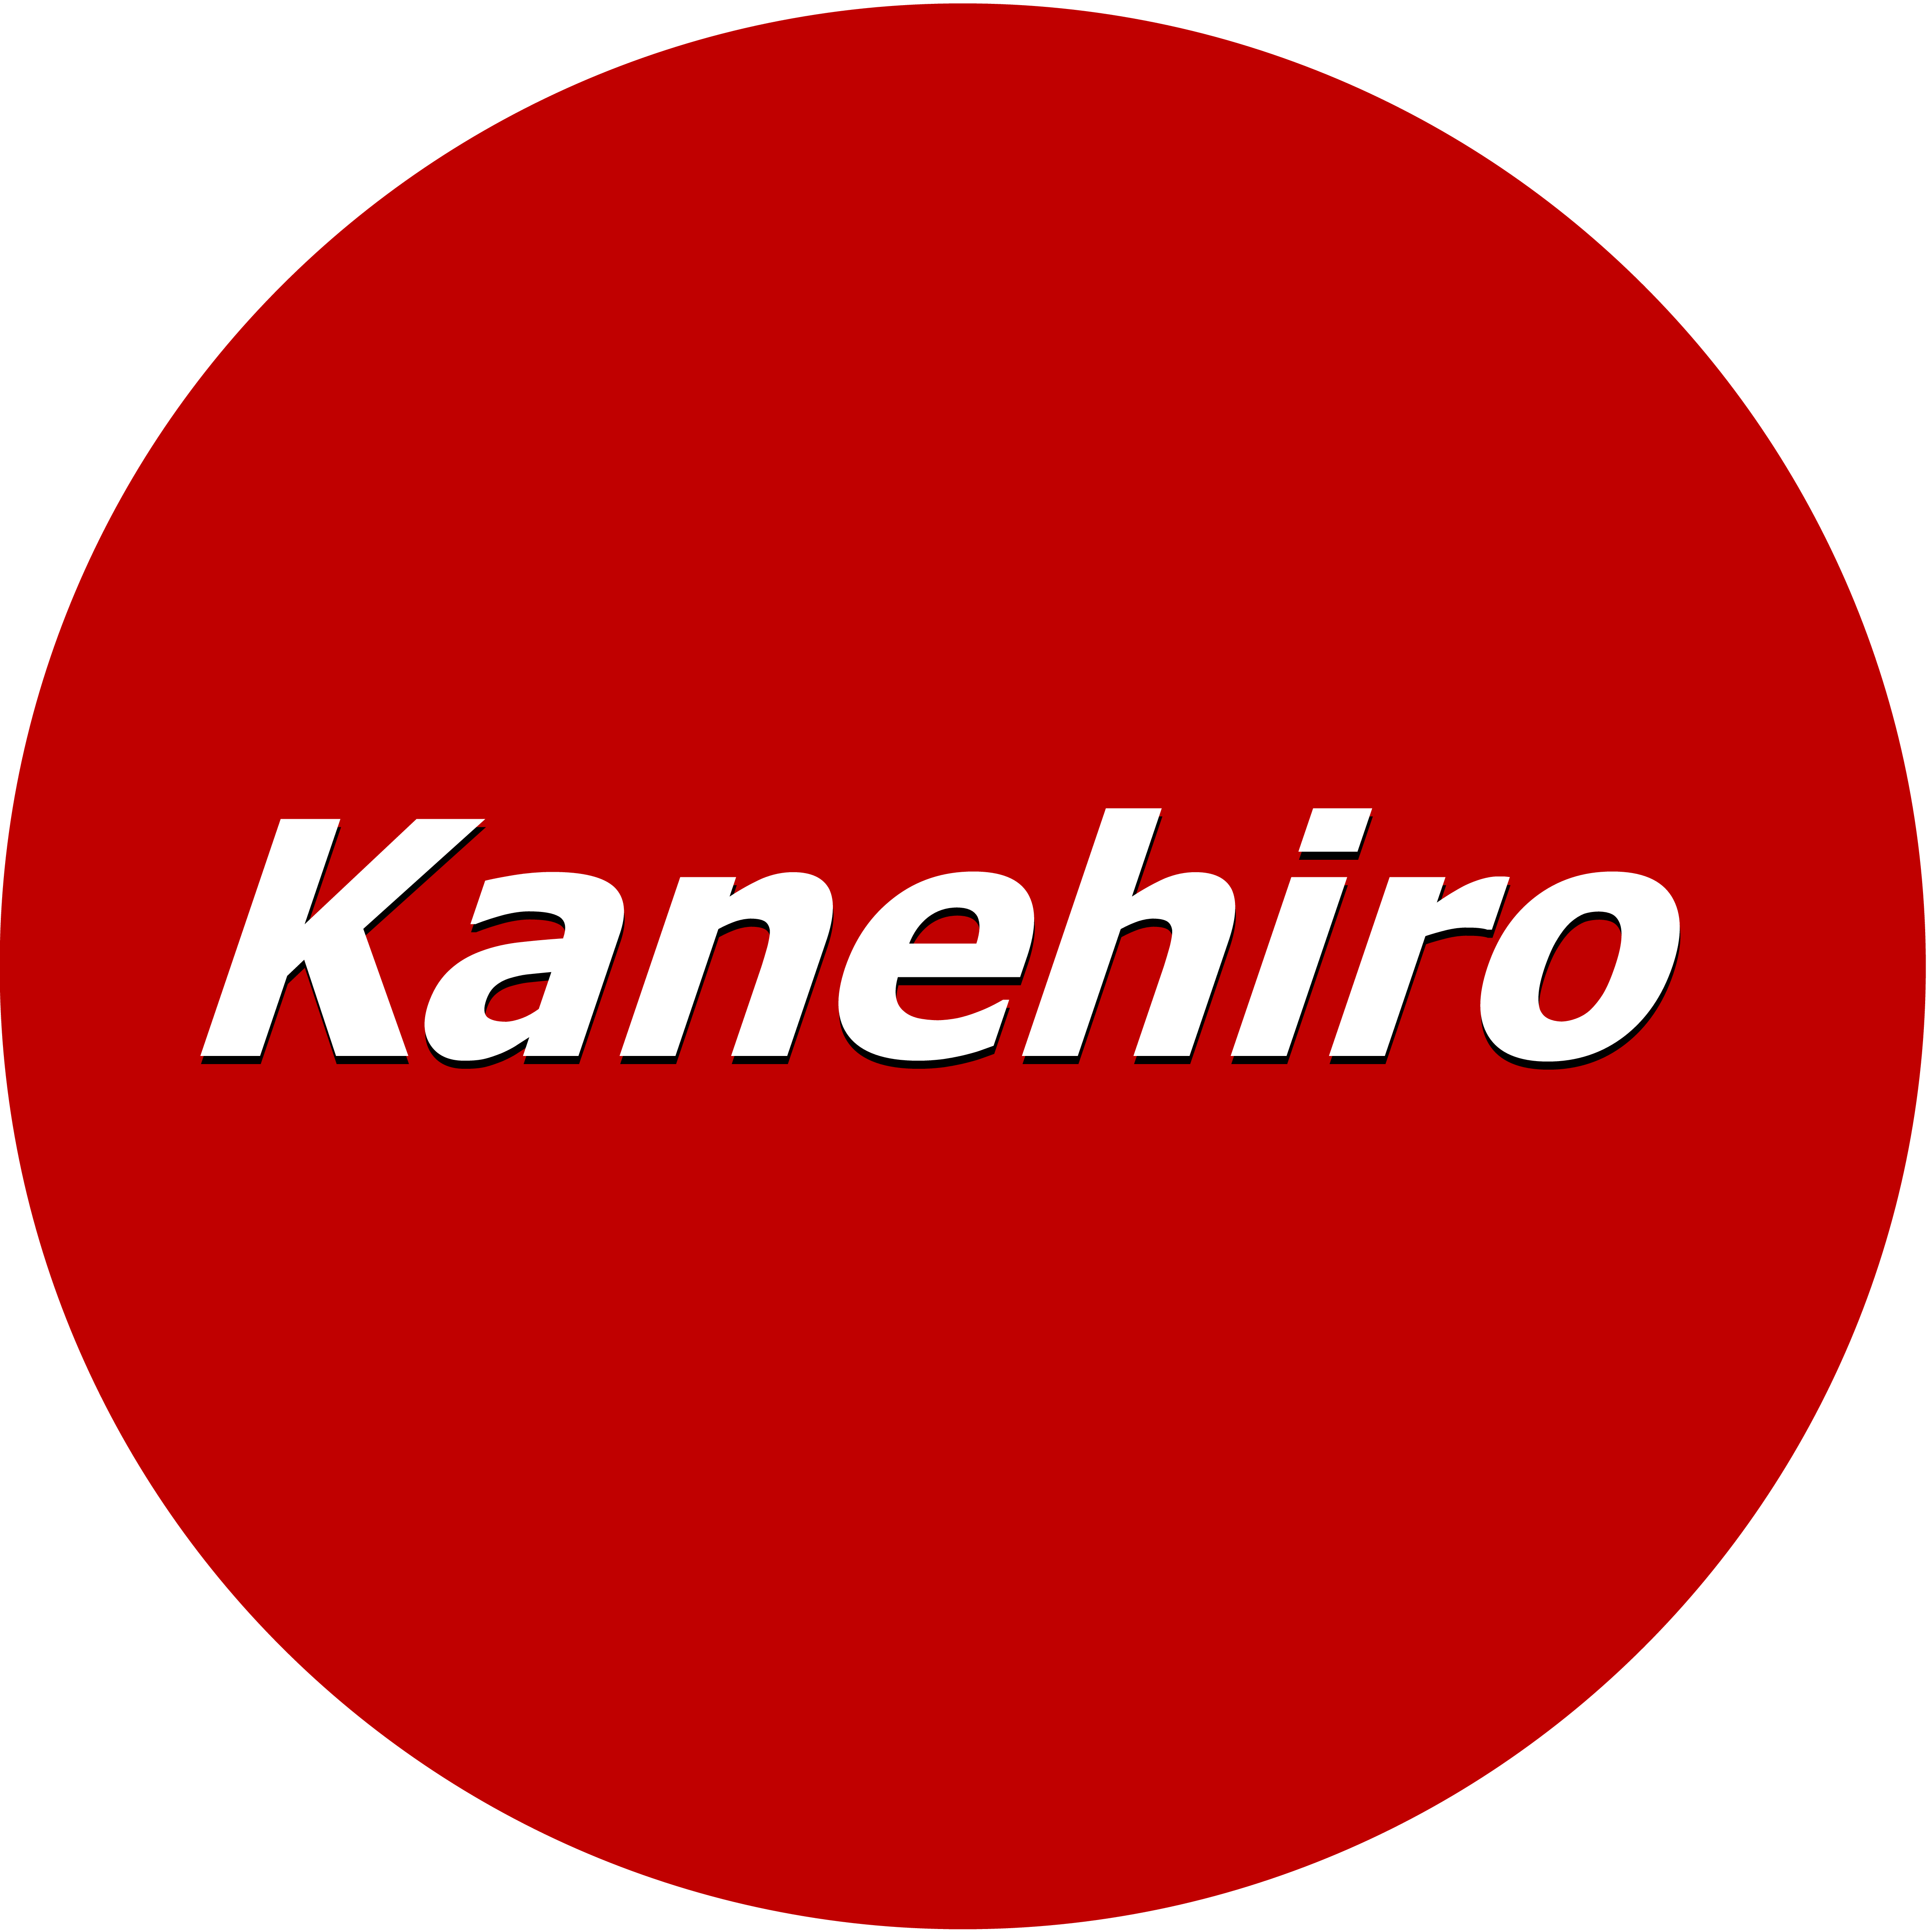 kanehiro